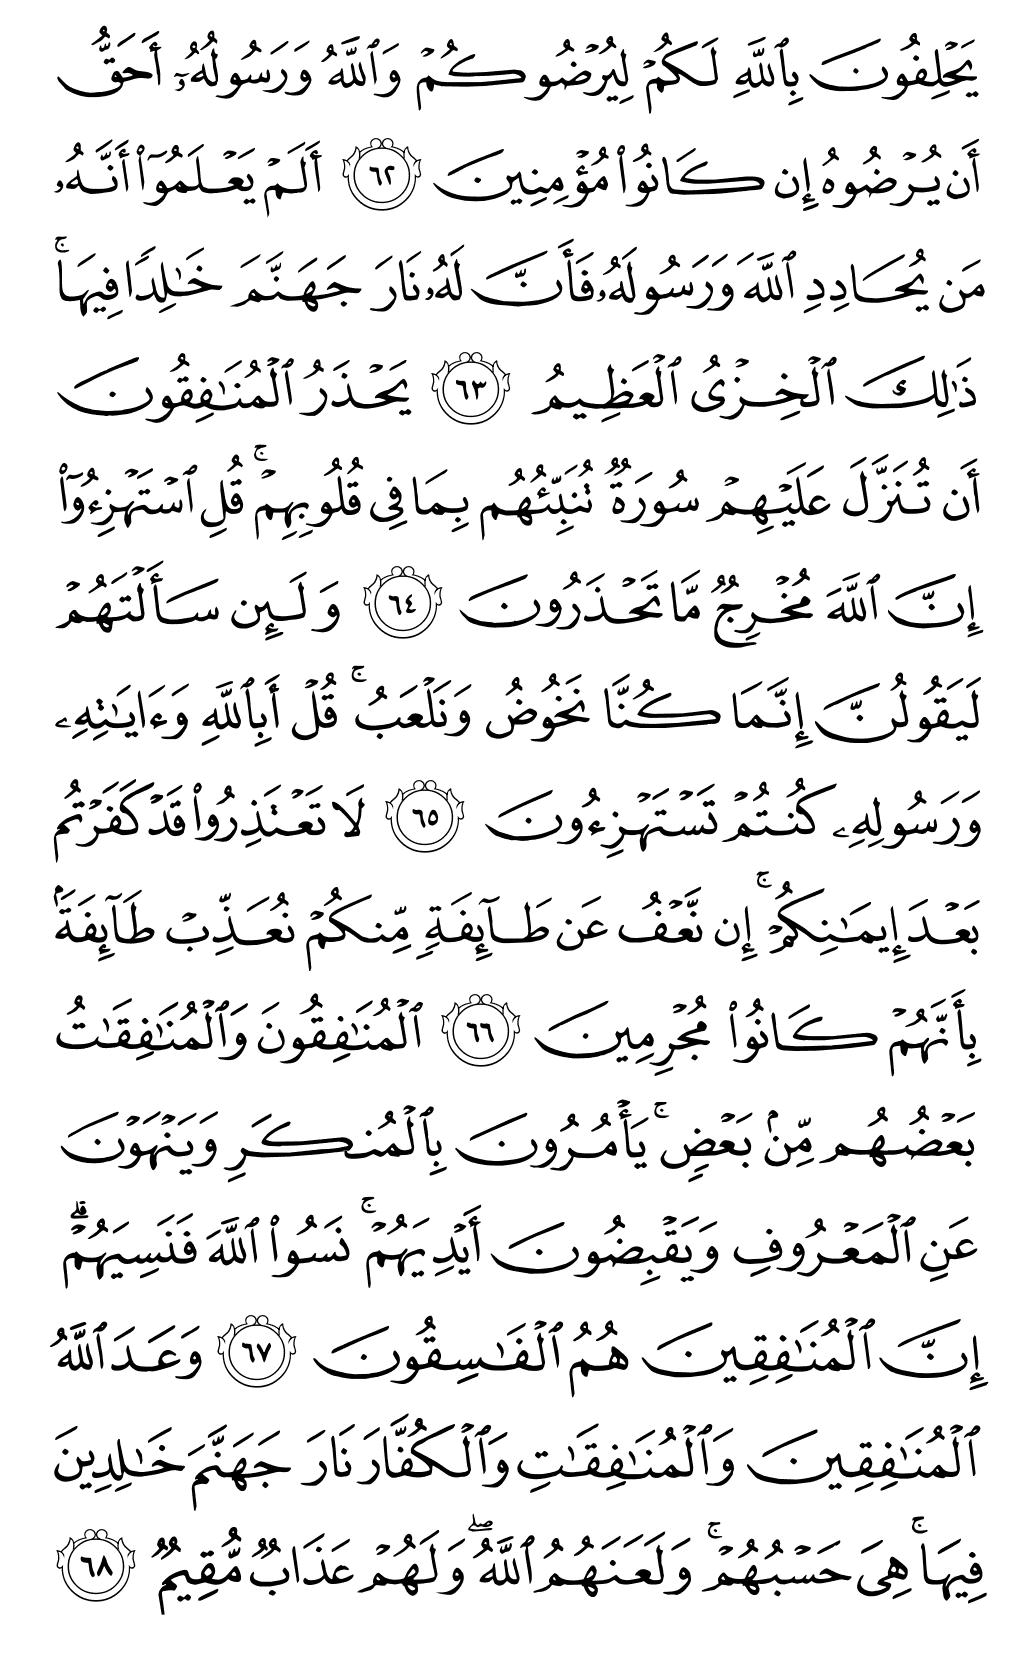 الصفحة رقم 197 من القرآن الكريم